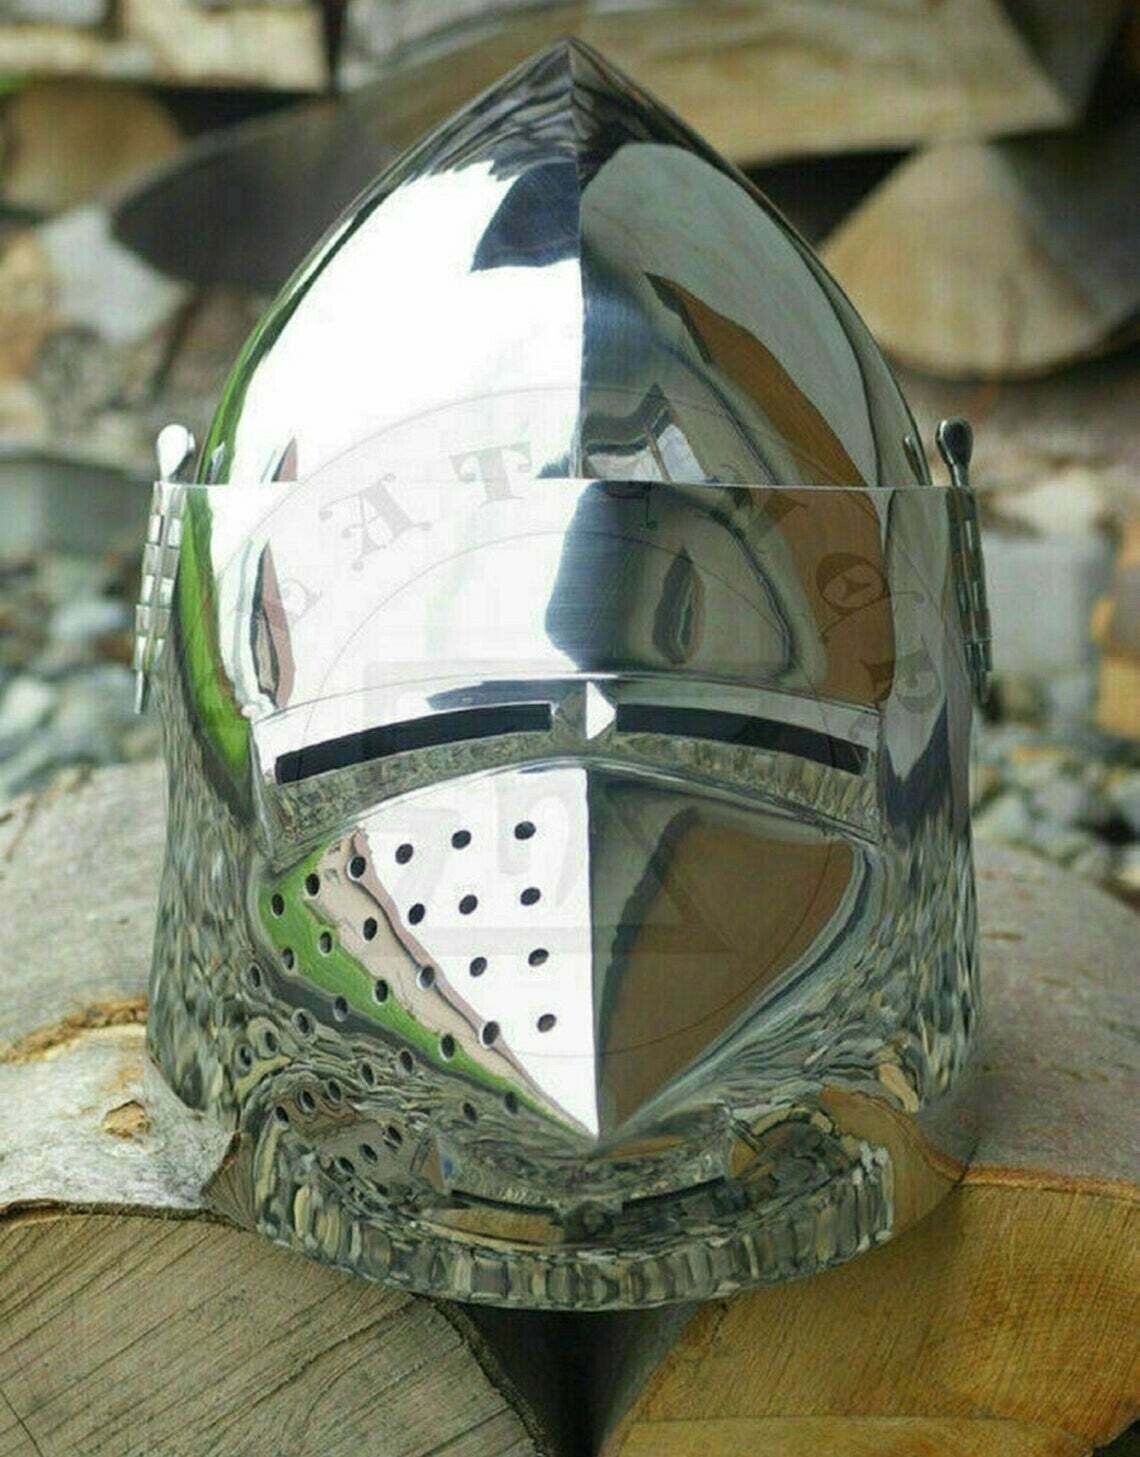 Medieval New Battle Ready Armor Knight Pig Face Helmet Armor Crusader Helmet